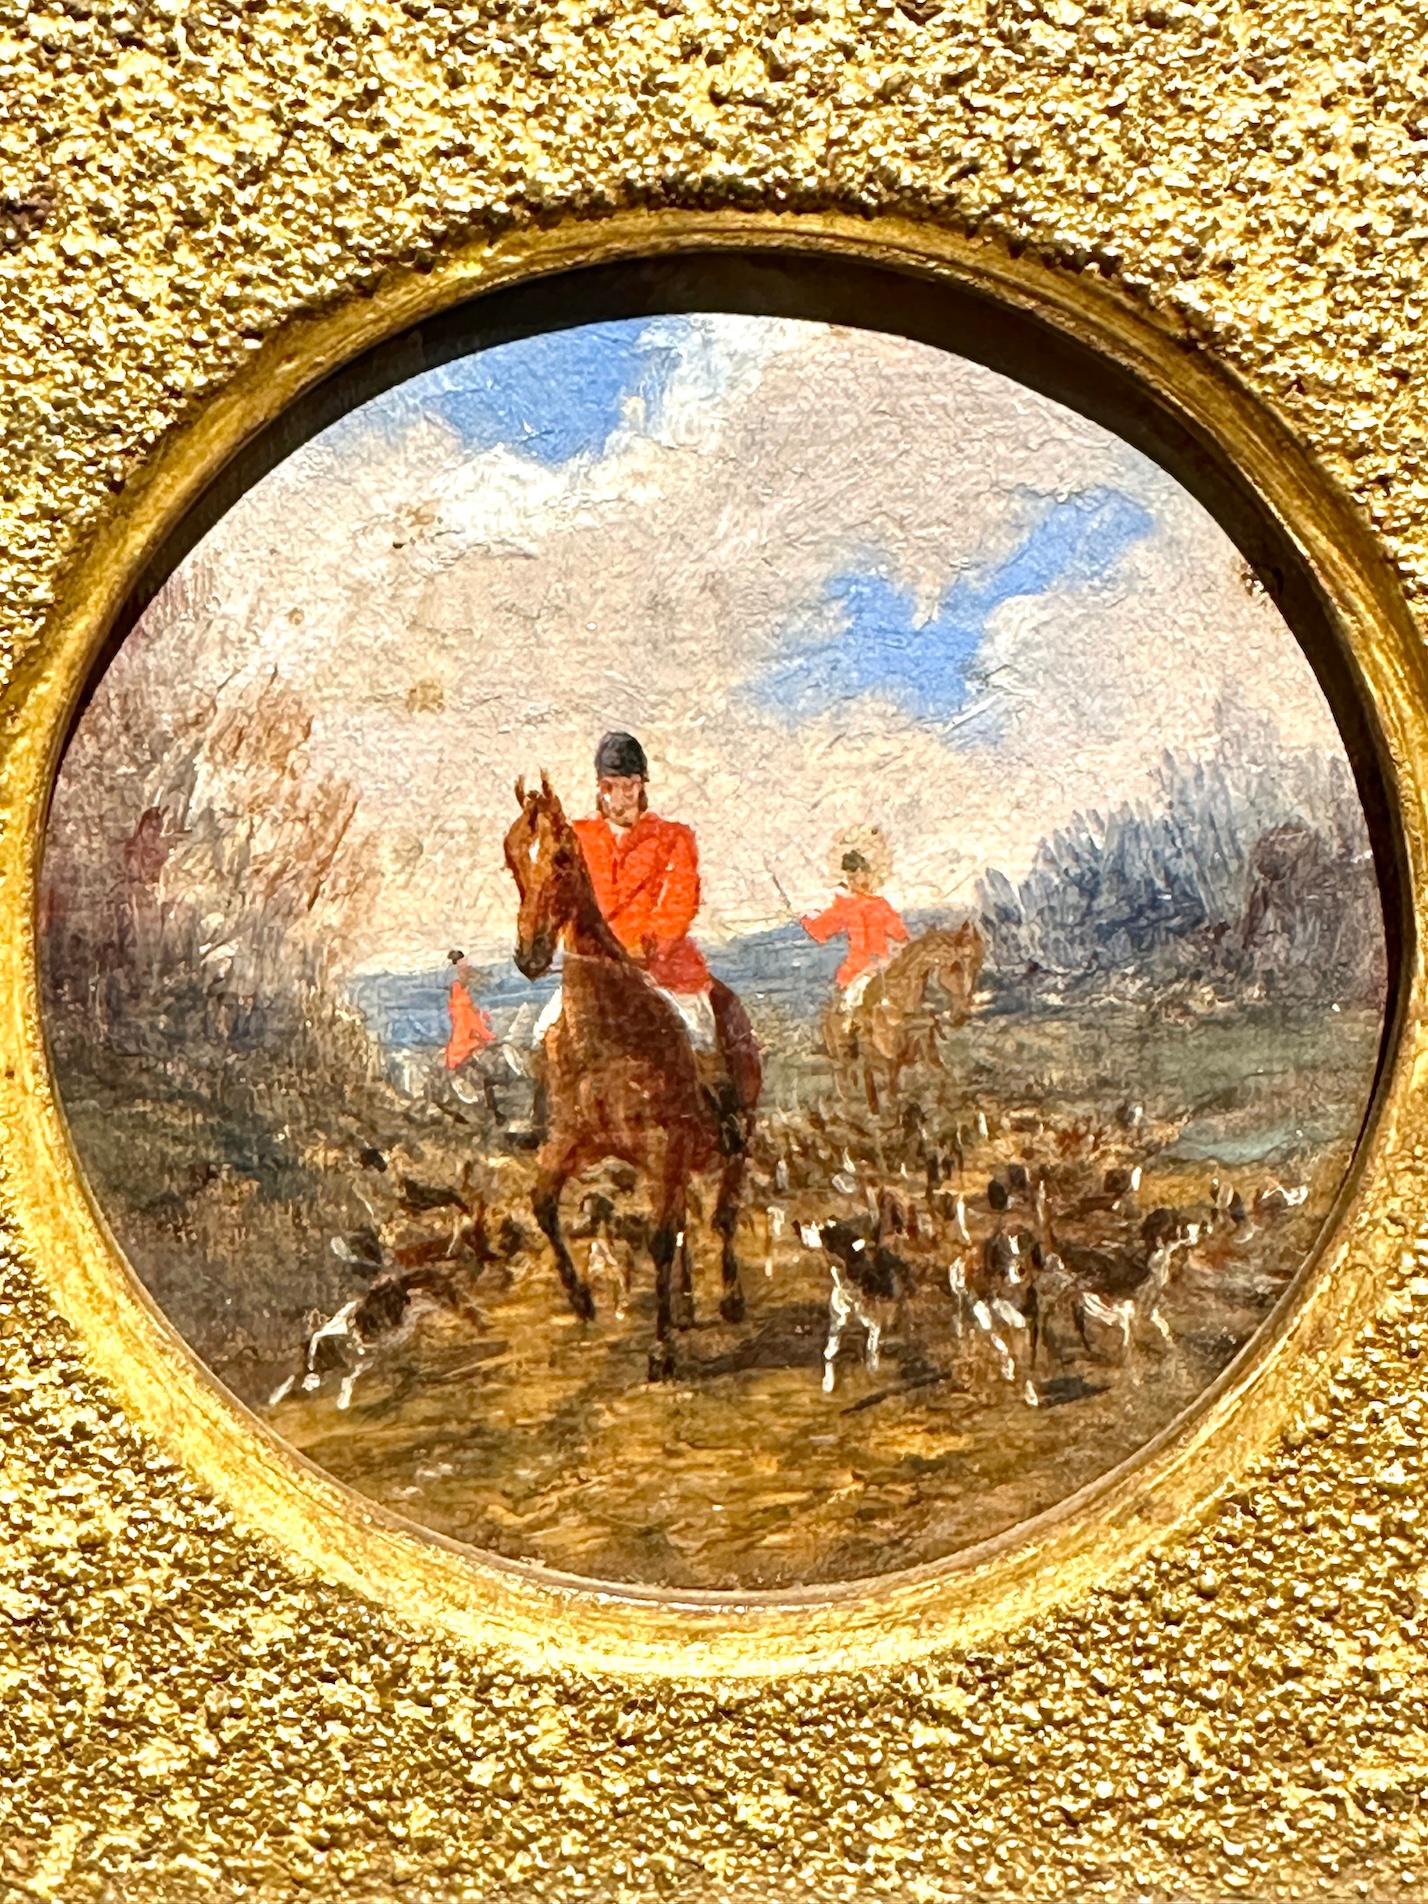 John Frederick Herring Junior, 

Ancienne paire de chasseurs anglais du 19ème siècle, chevauchant avec des chiens dans un paysage.

John Frederick Herring Jnr. était un peintre de sujets sportifs et animaliers à l'huile et à l'aquarelle. Son style